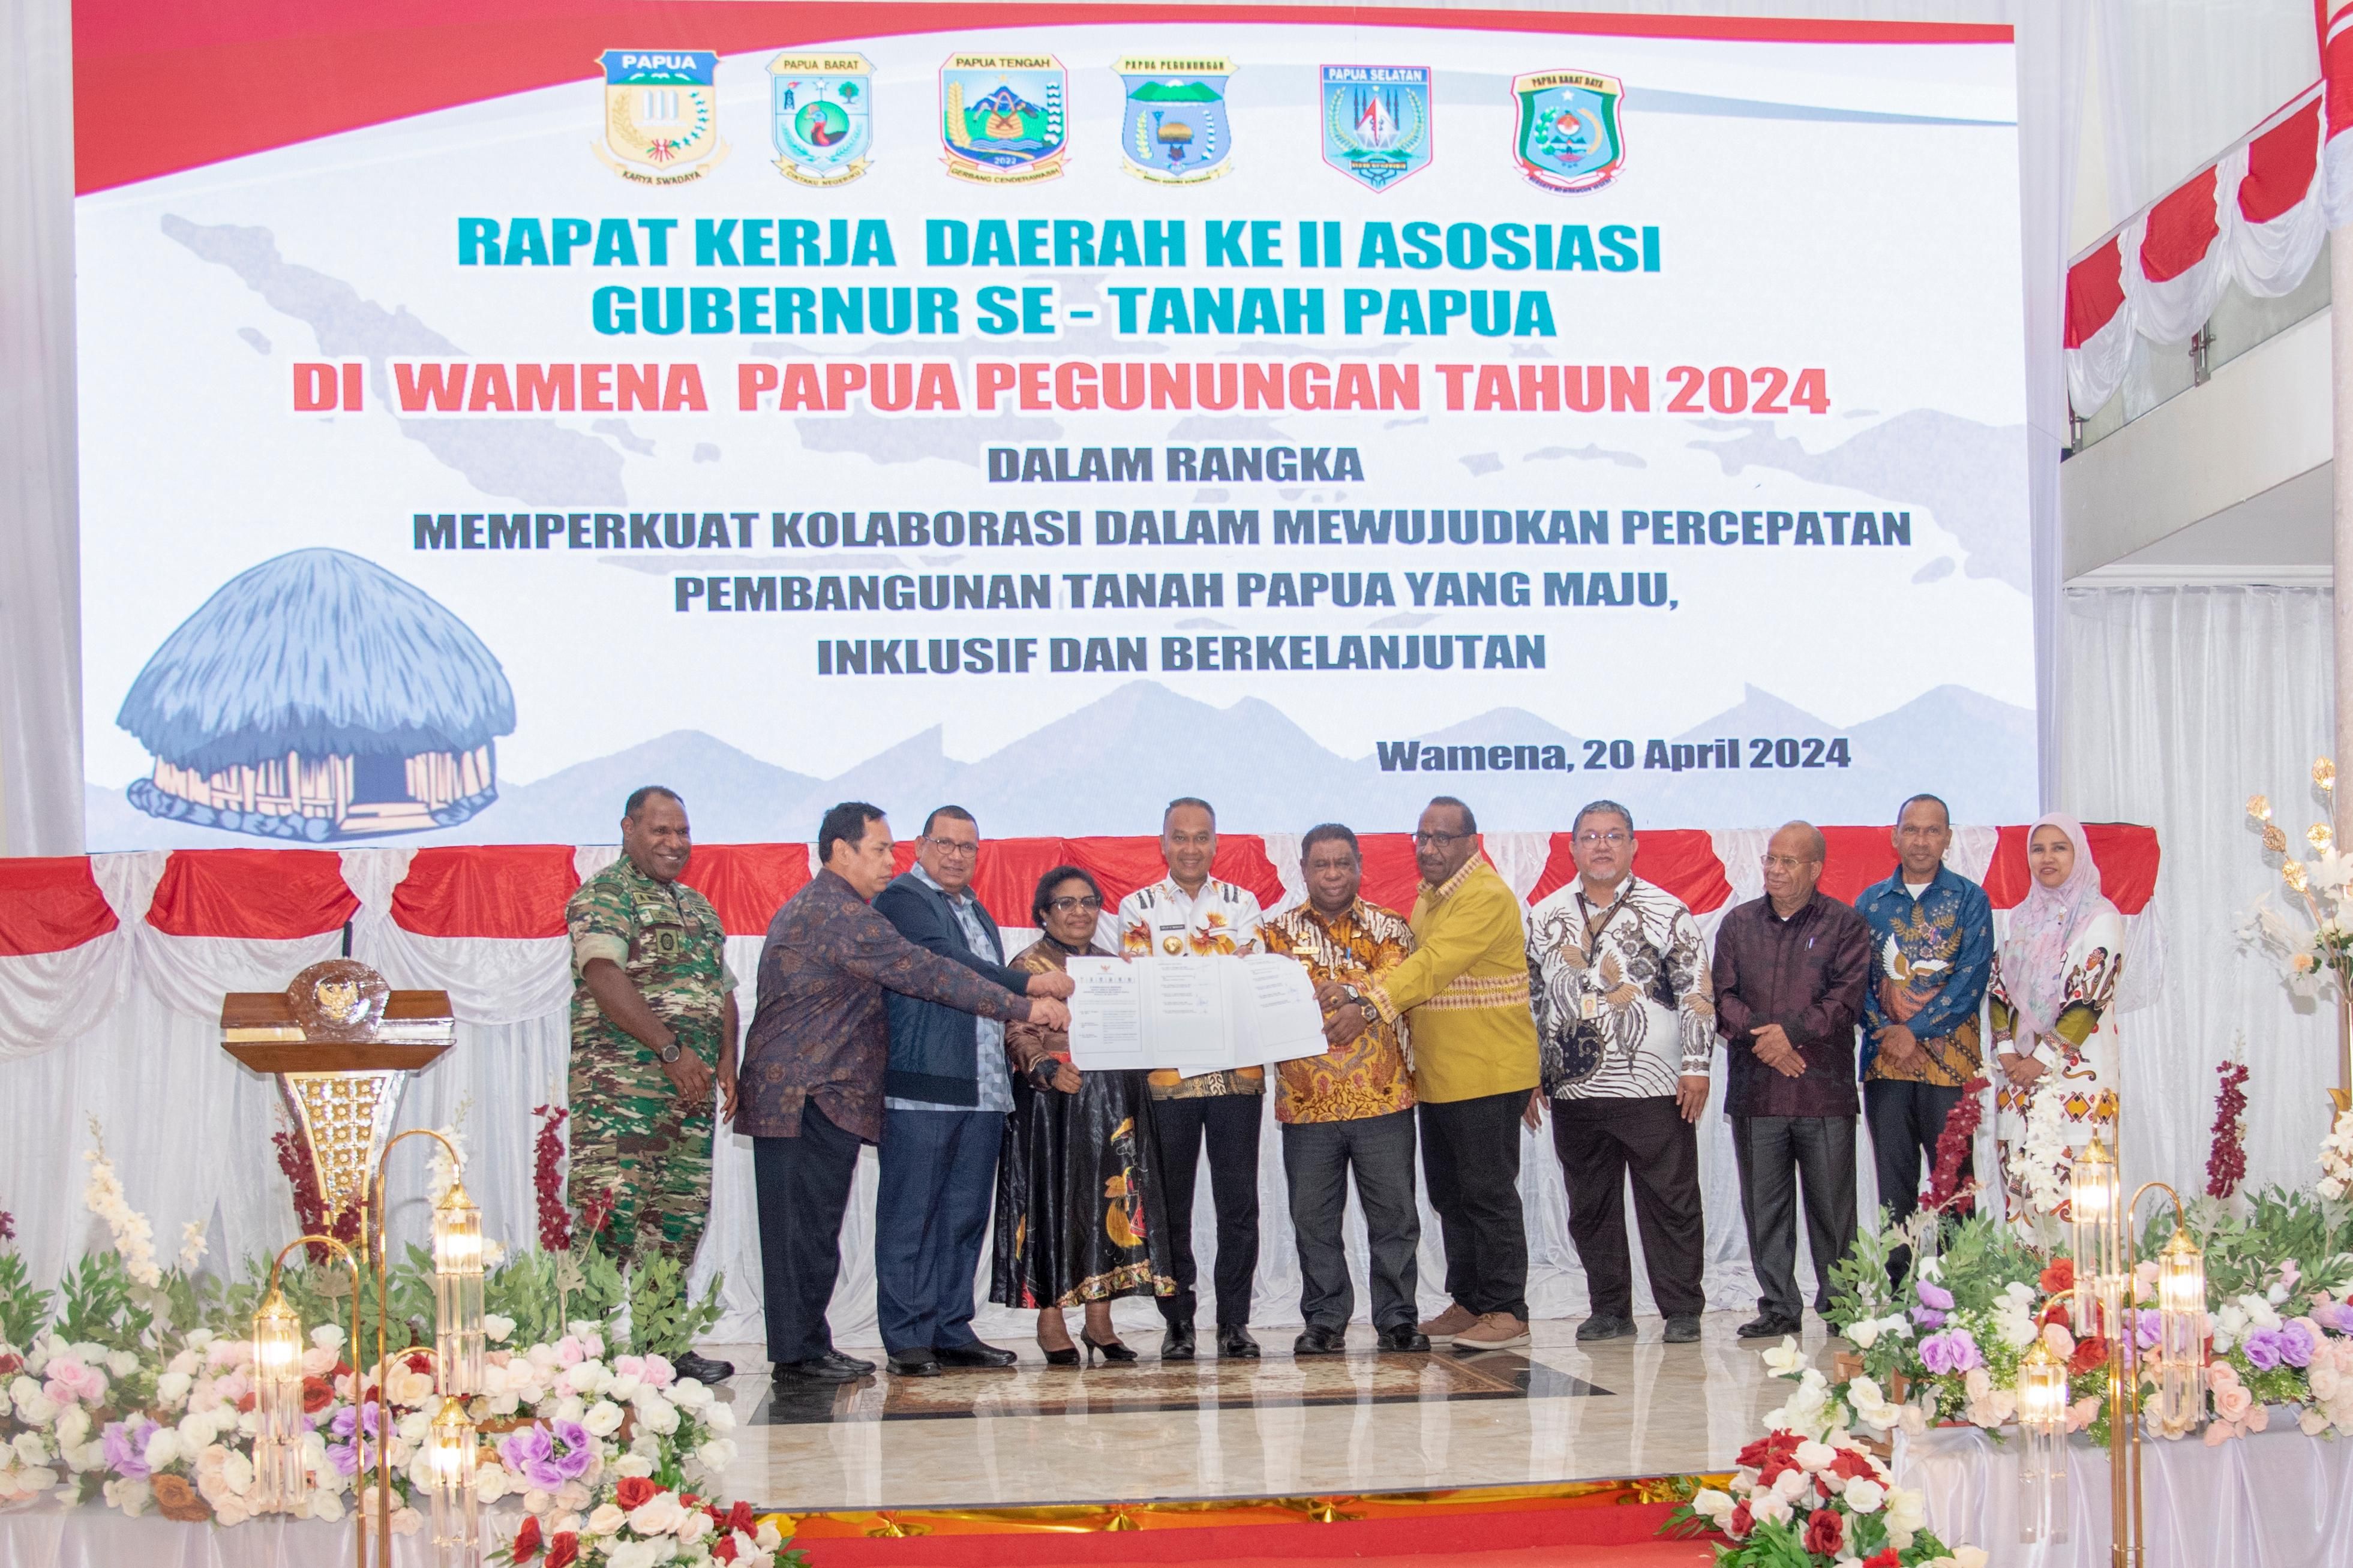 Para penjabat Gubernur se-Tanah Papua mensepakati 9 (sembilan) poin straegis, yang disebut SEMBILAN PESAN LEMBAH BALIEM UNTUK TANAH PAPUA.